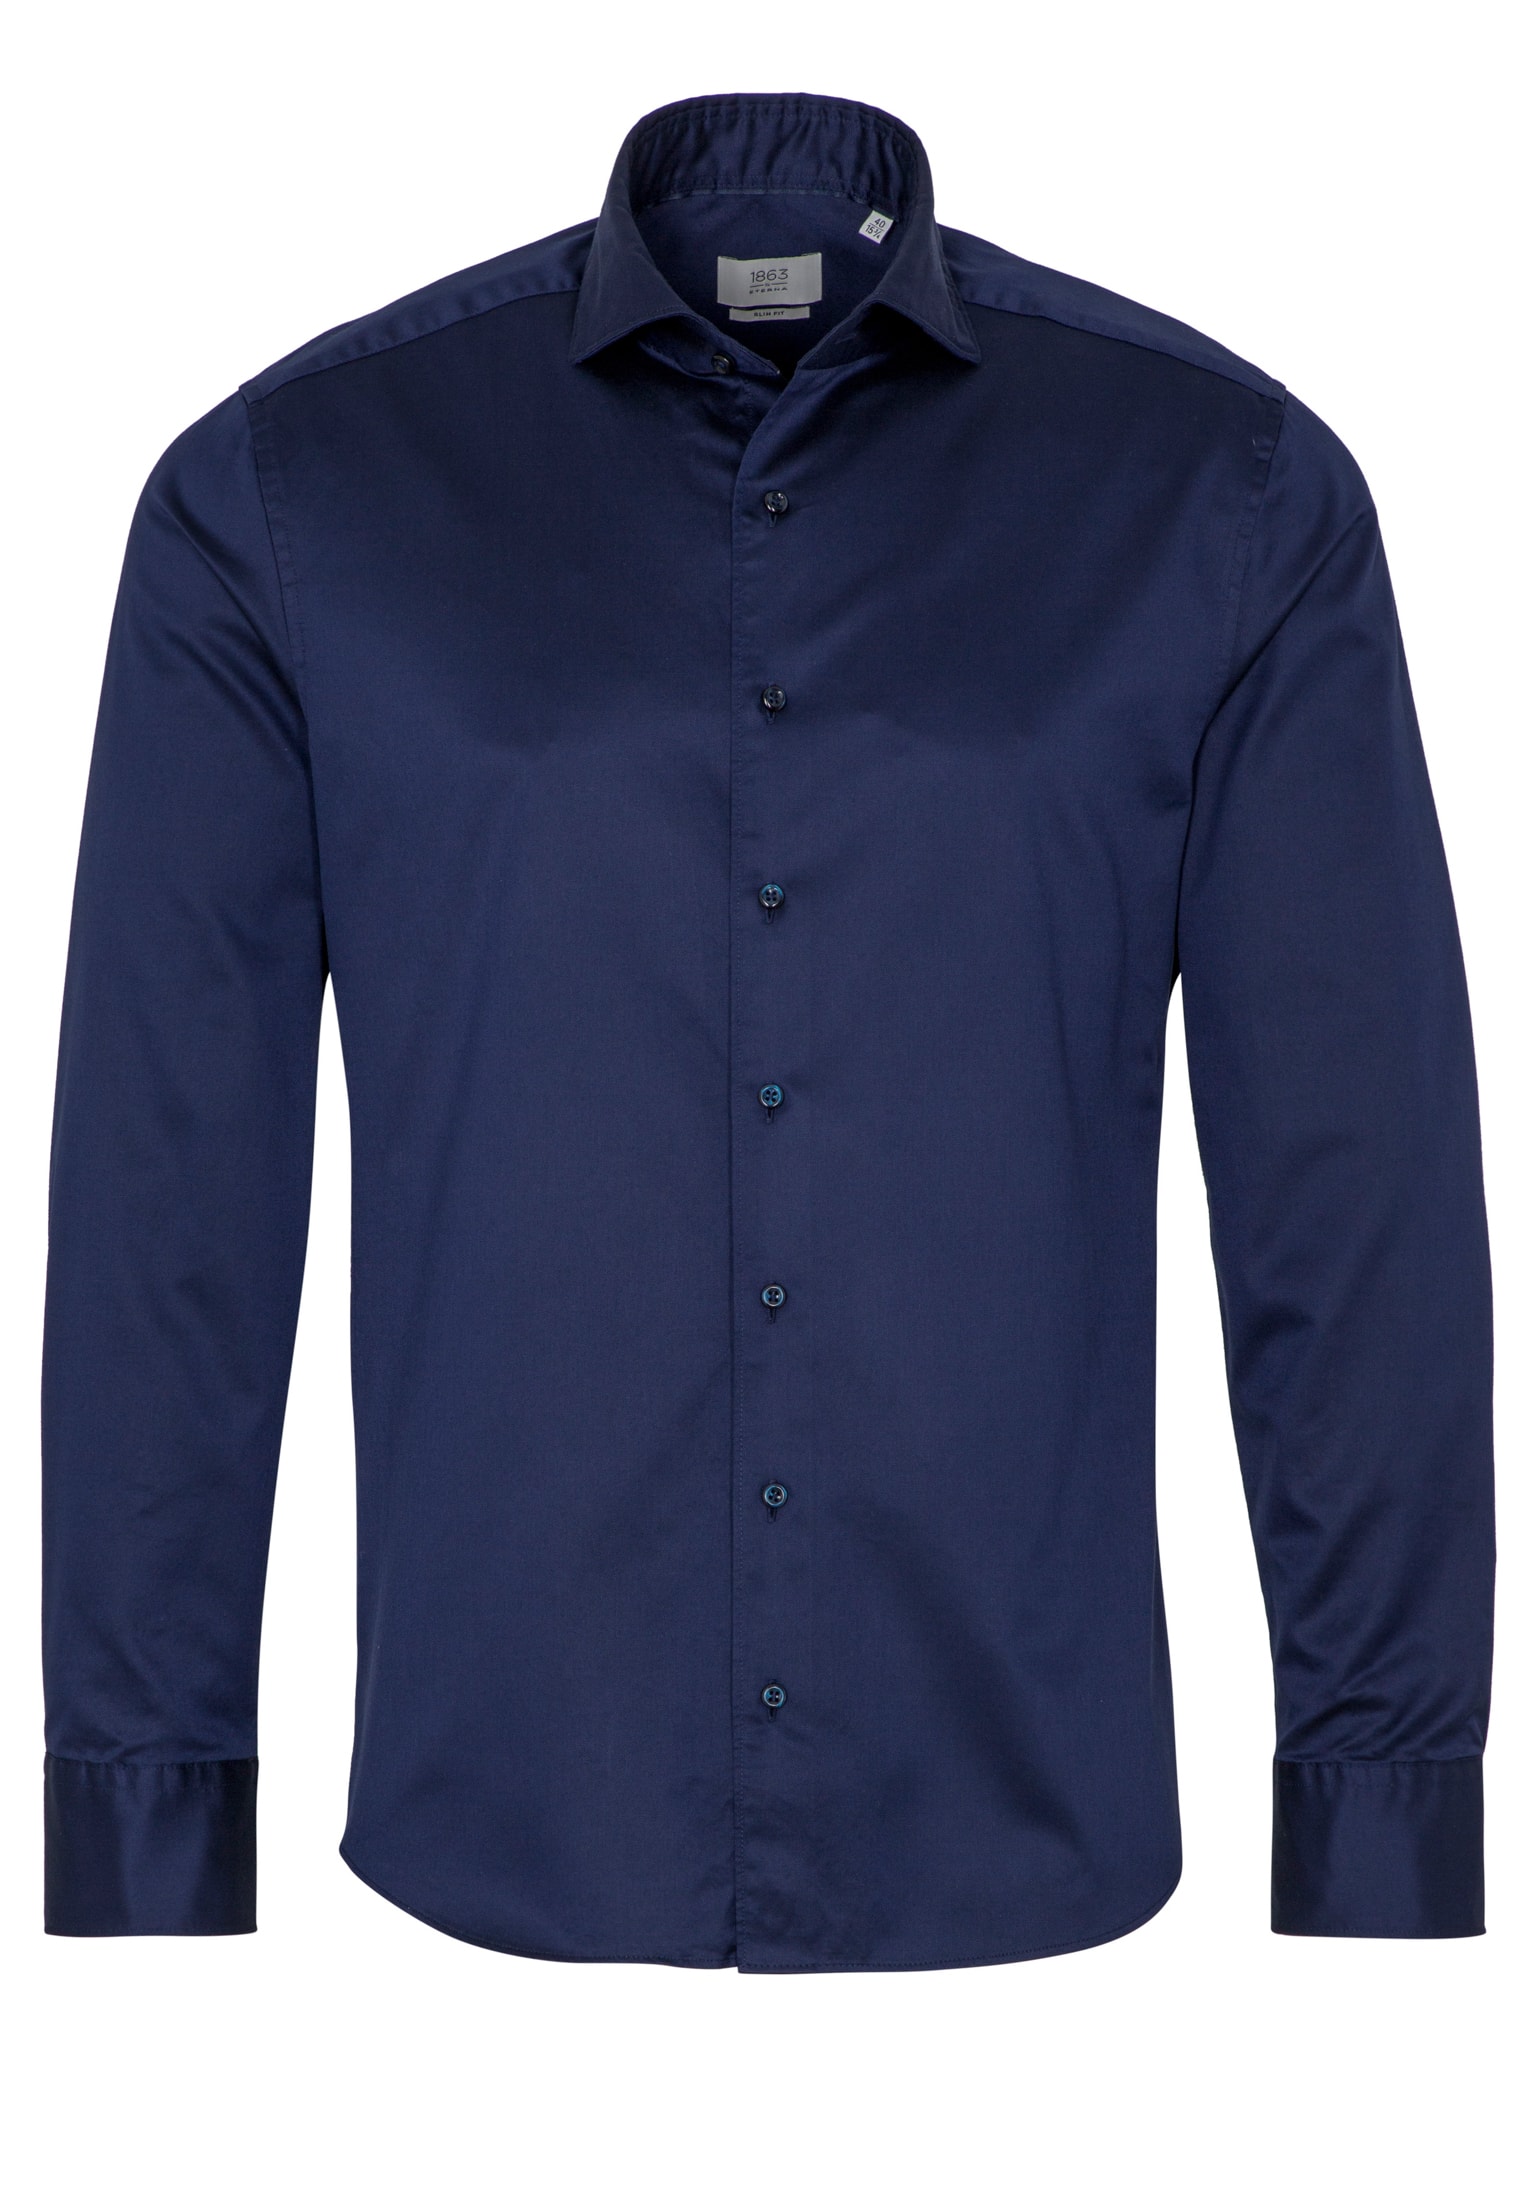 SLIM FIT Soft Luxury Shirt bleu foncé uni